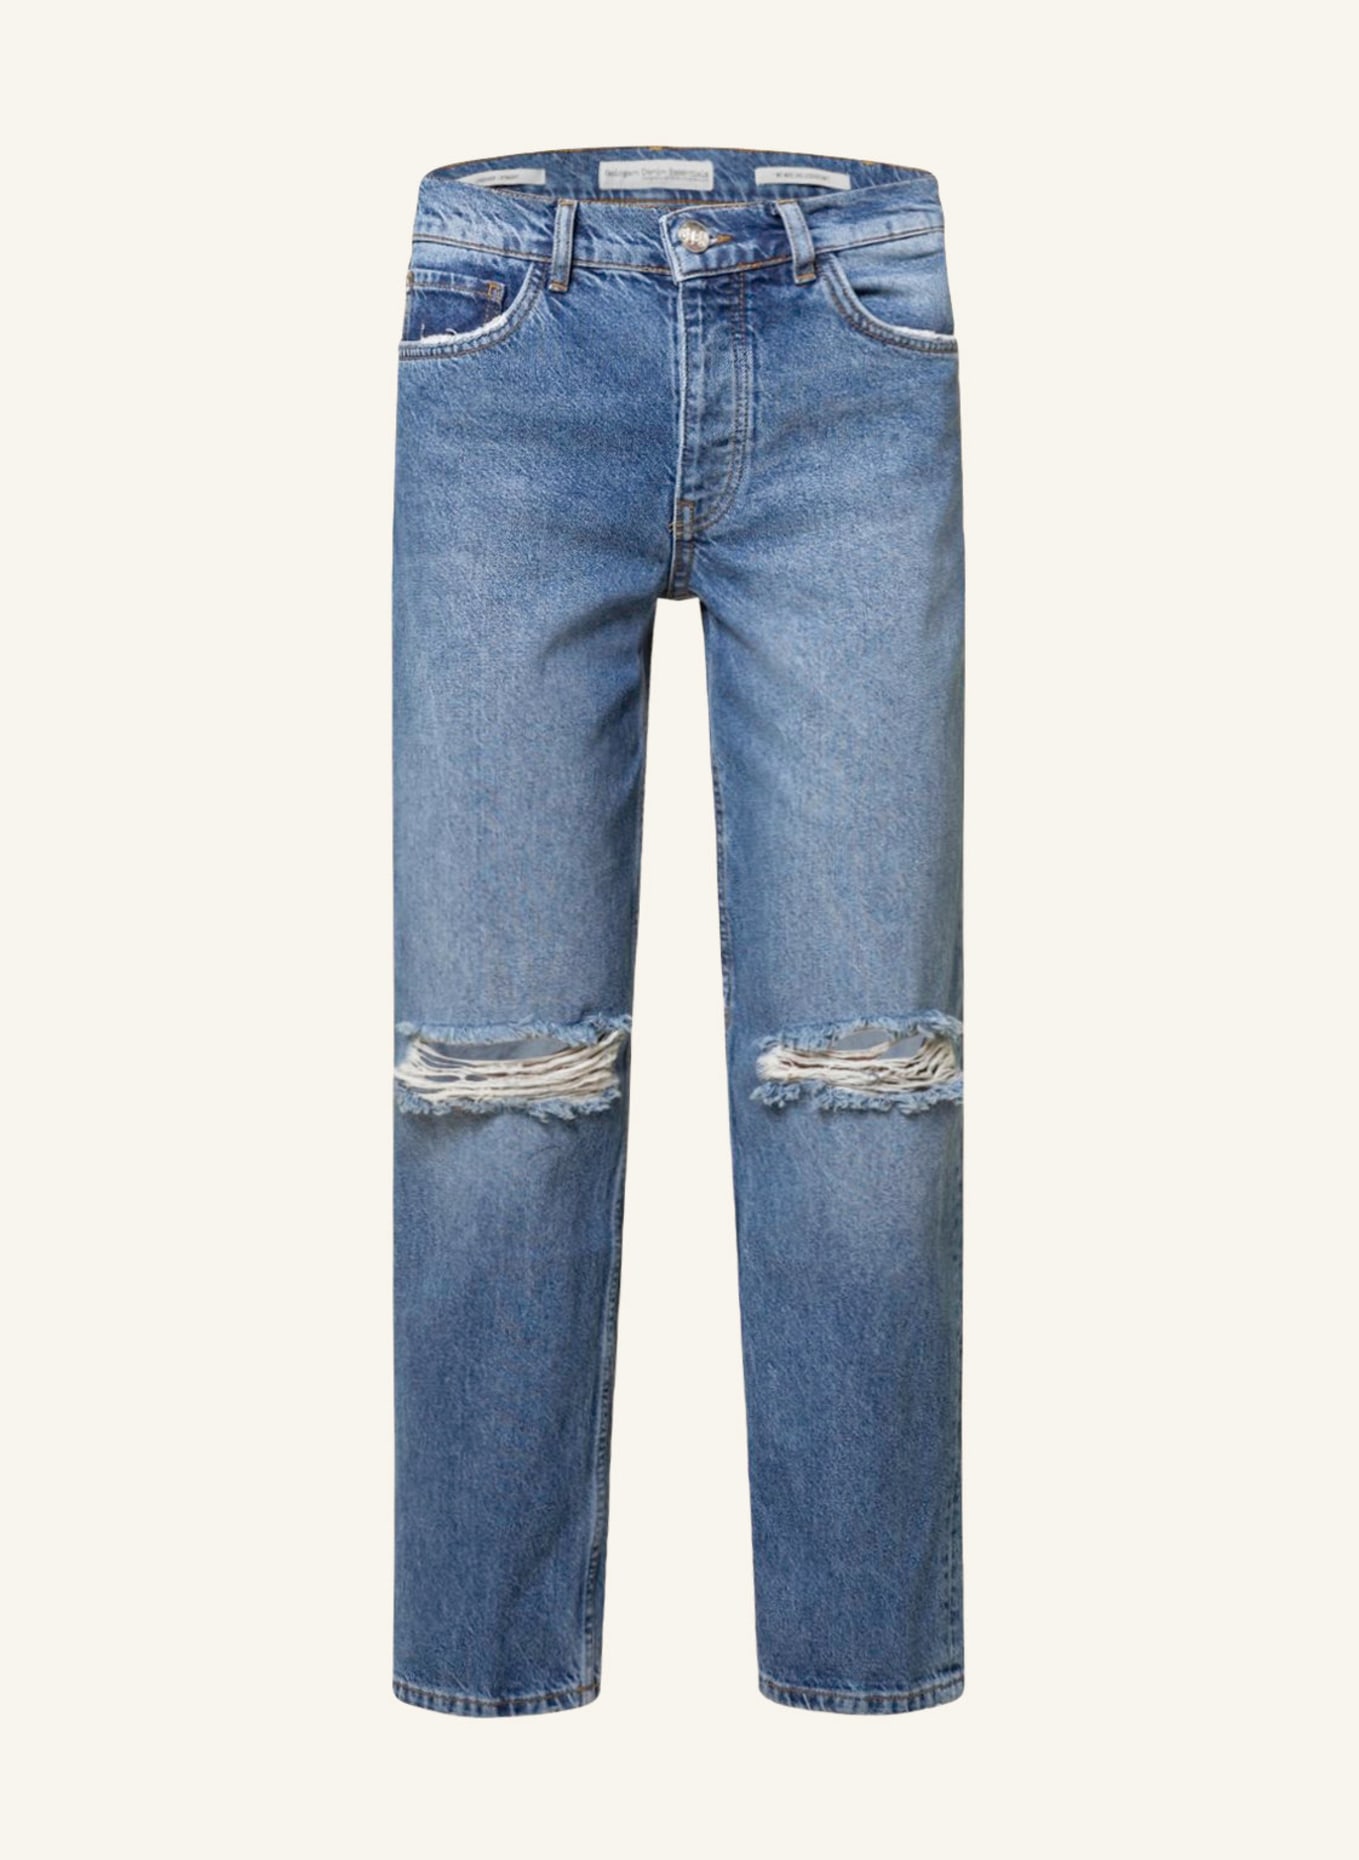 GOLDGARN DENIM Straight jeans LINDENHOF, Color: 1010 Vintageblue (Image 1)